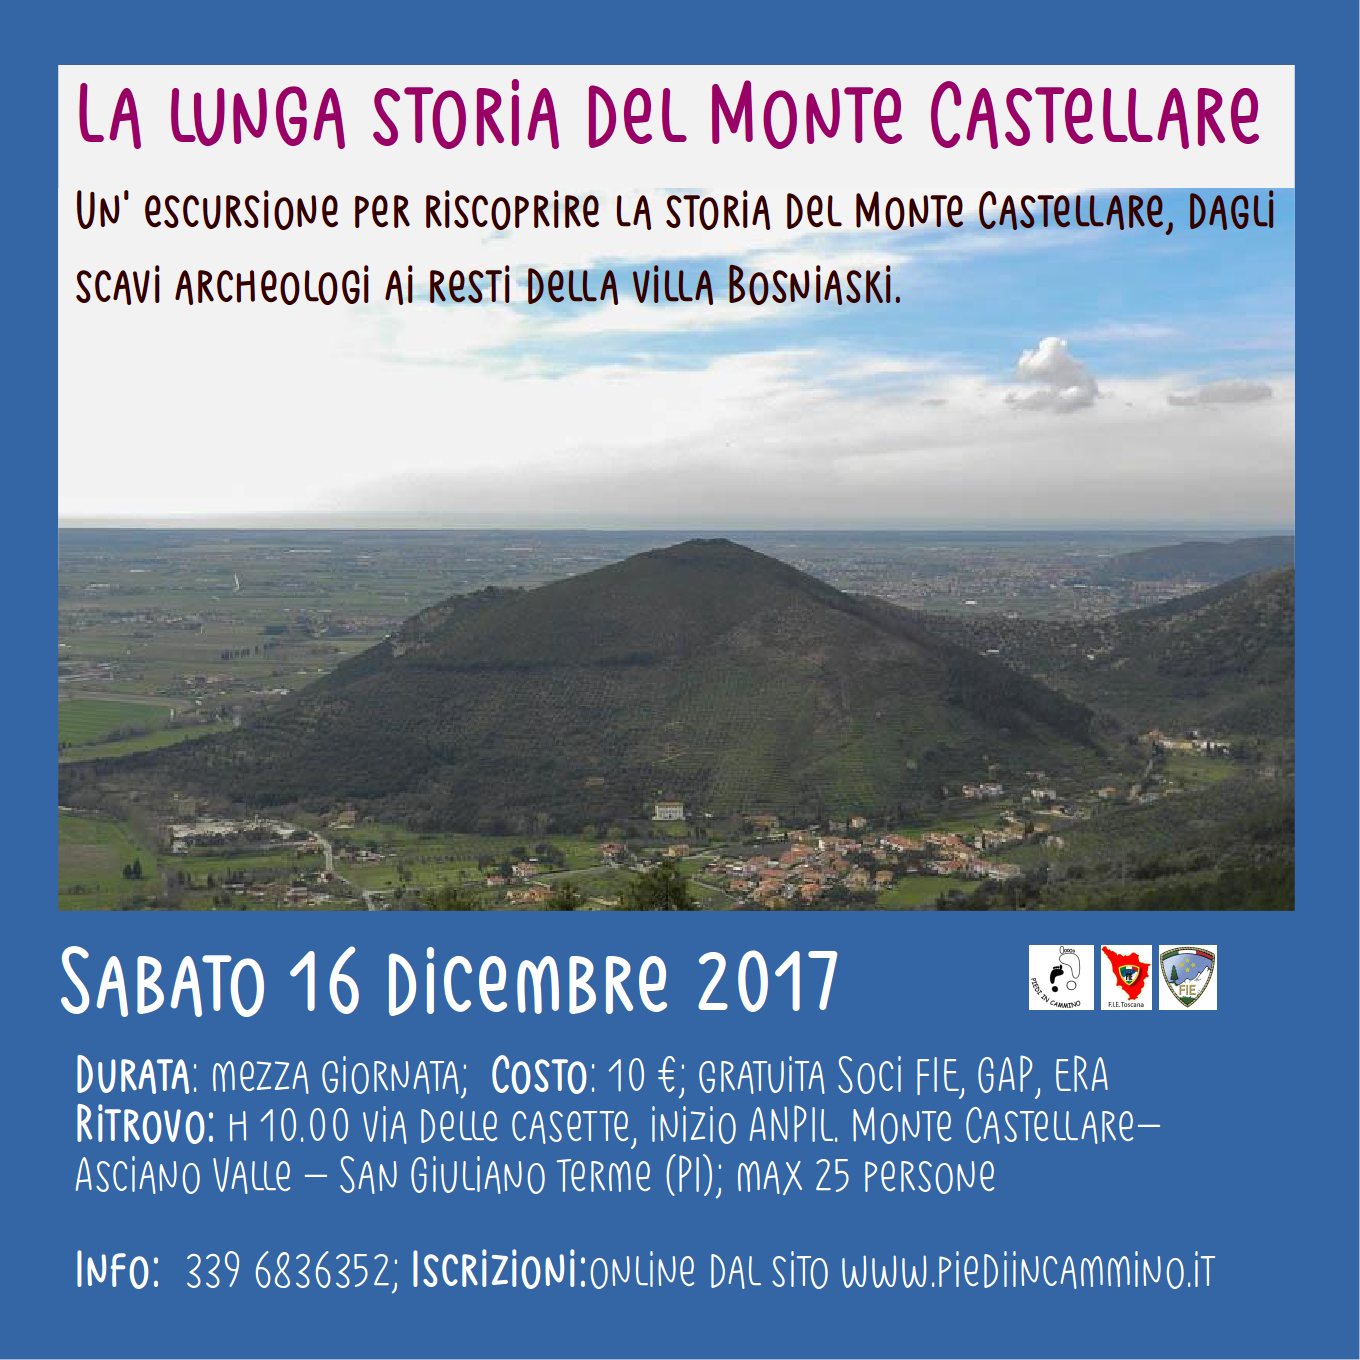 La lunga storia del Monte Castellare